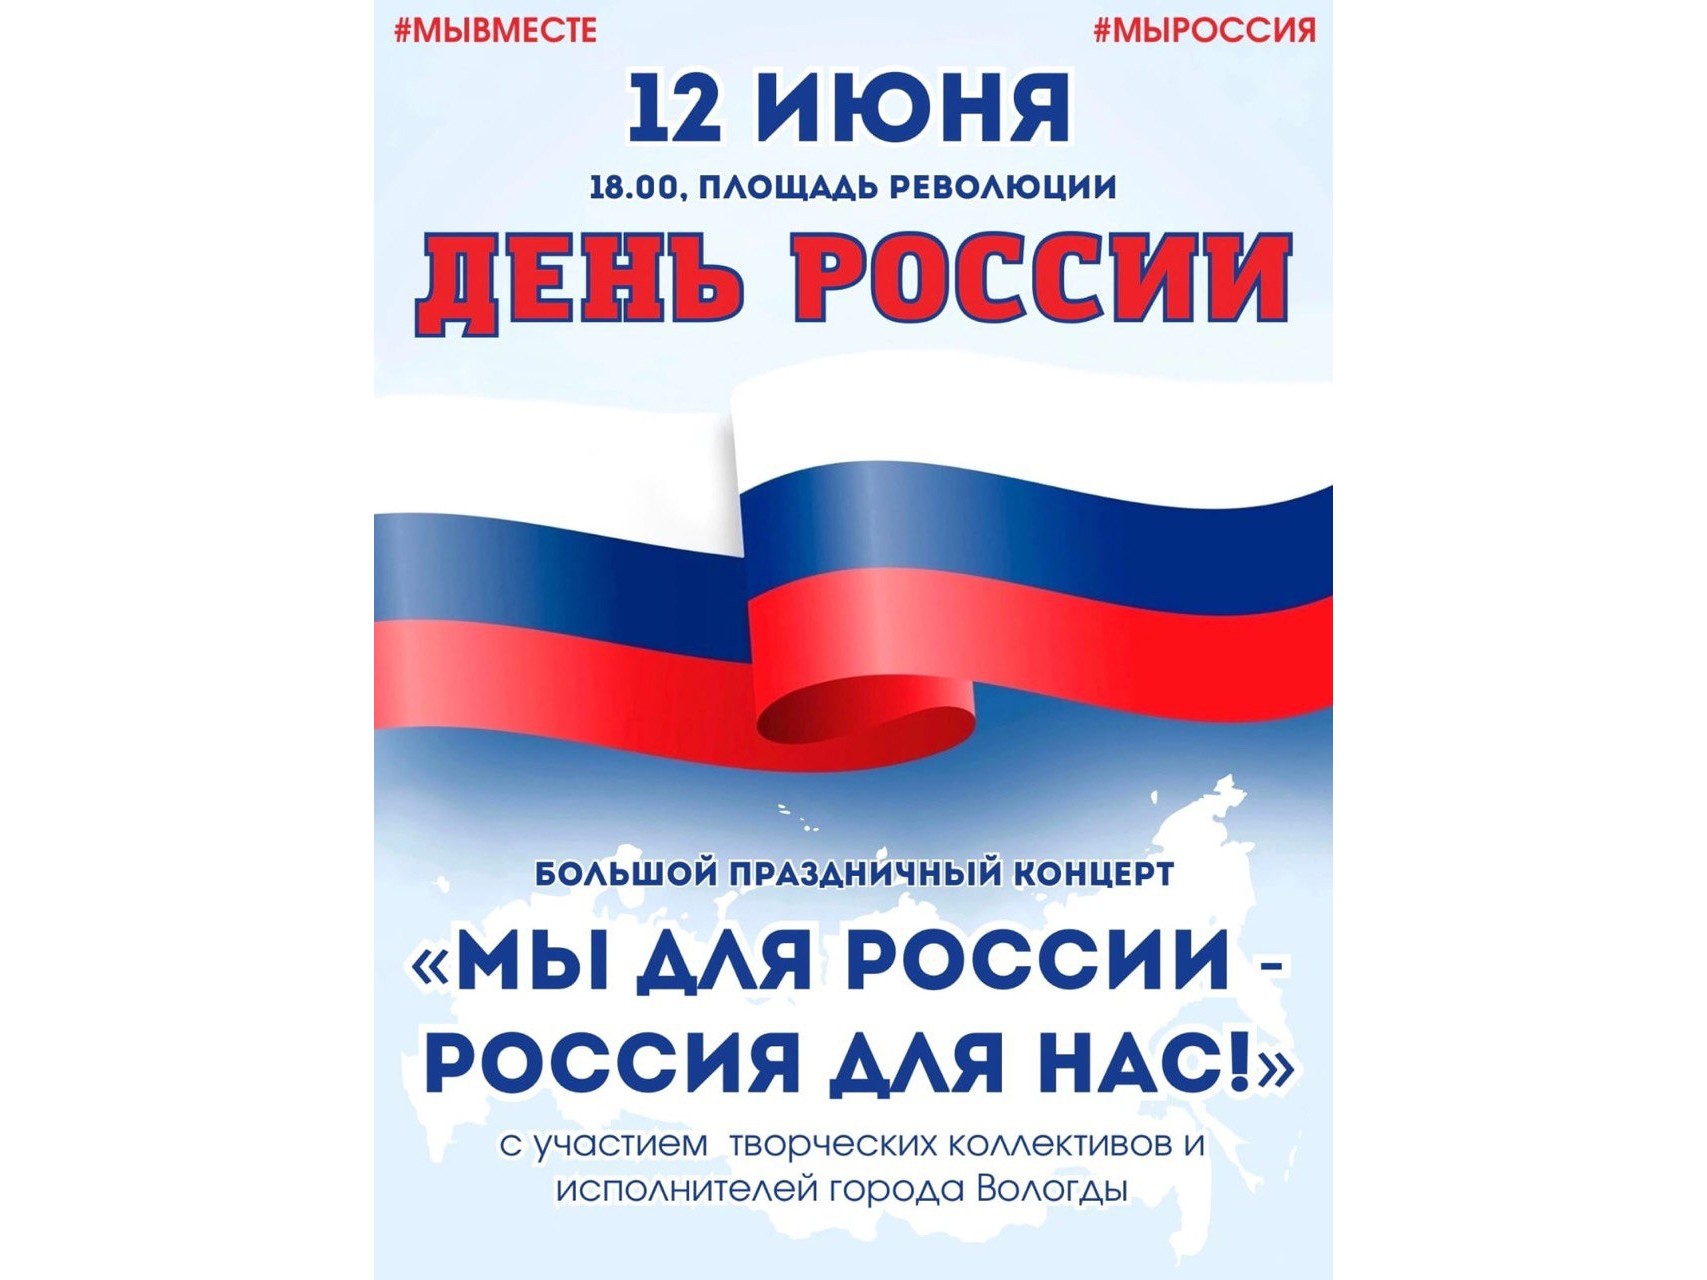 Праздничный концерт пройдет в День России в Вологде на площади Революции.